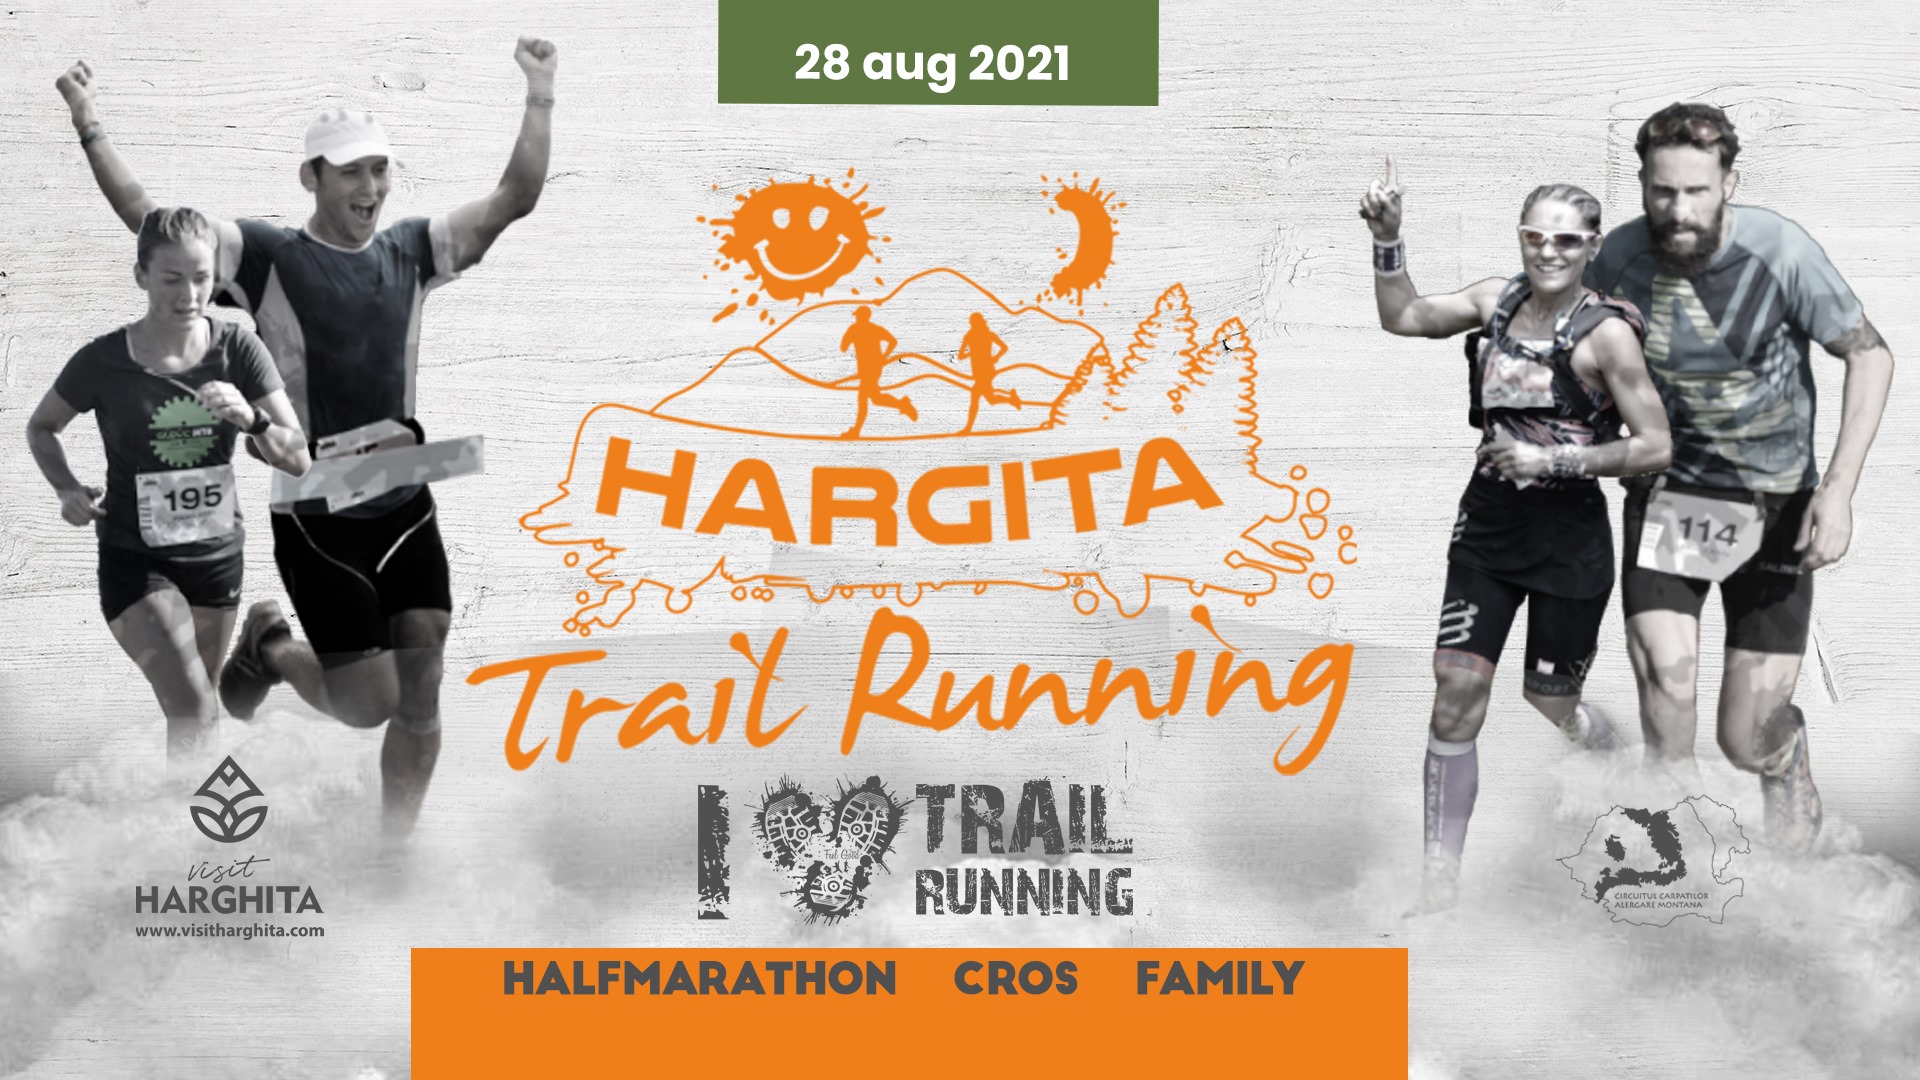 Hargita Trail Running